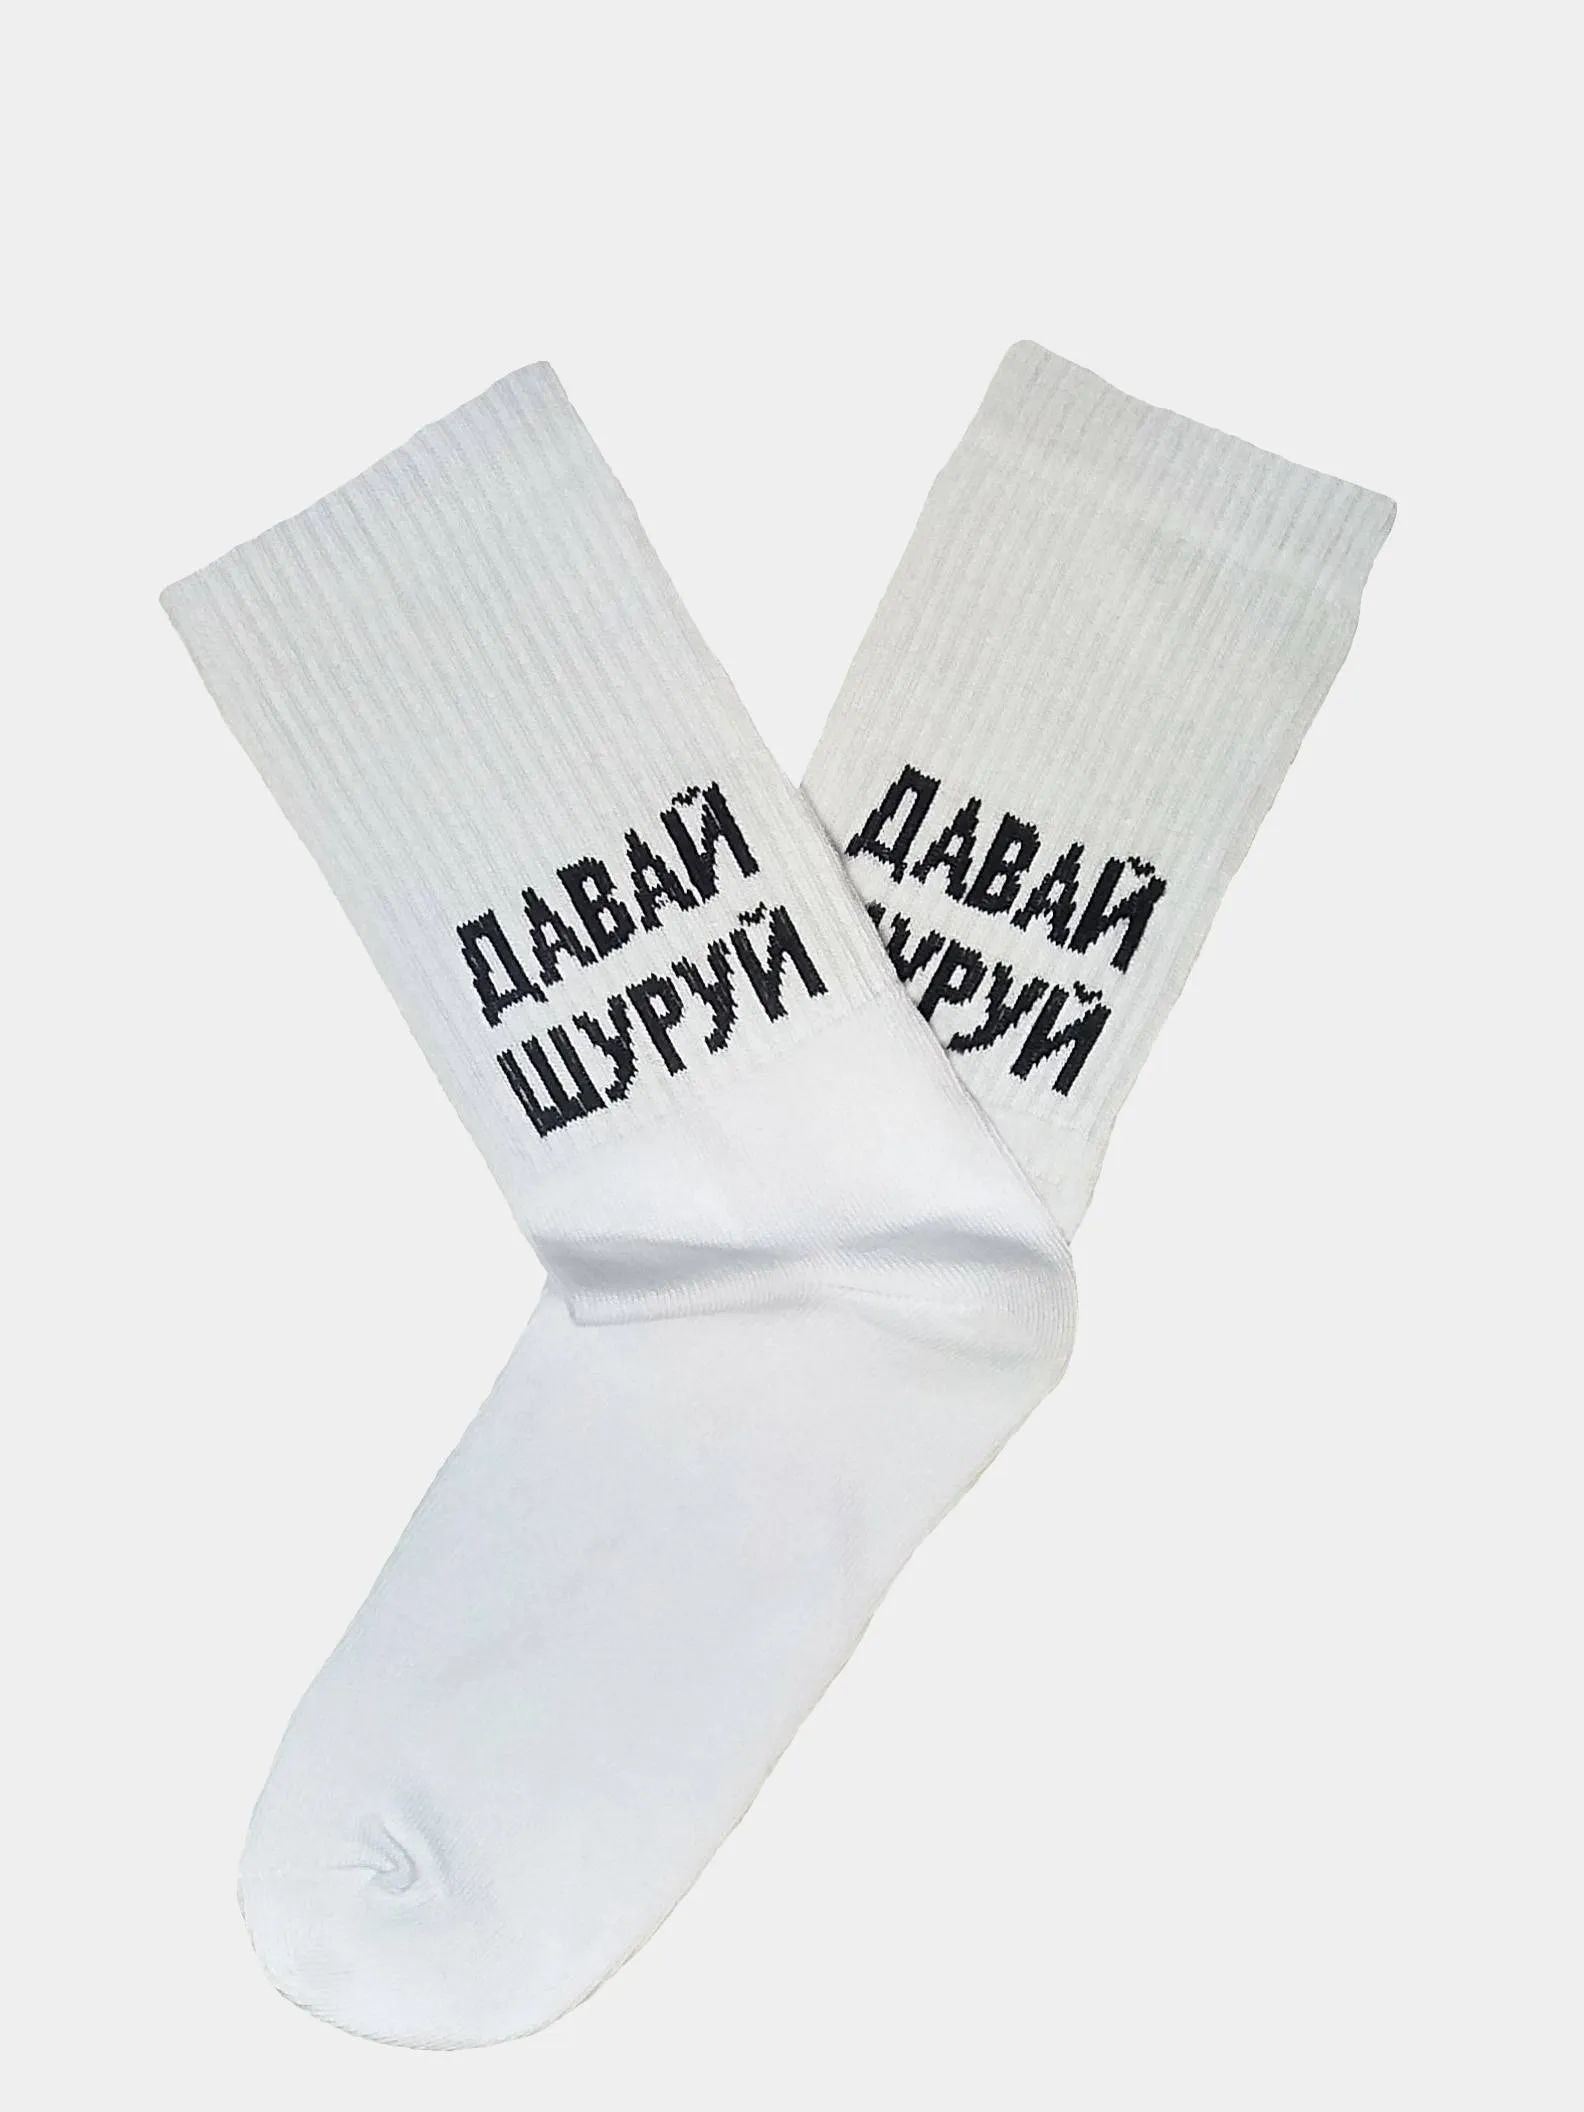 Дай носочек. Носки с надписями. Дизайнерские носки. Носки с надписями прикольные. Носки с приколом для мужчин.